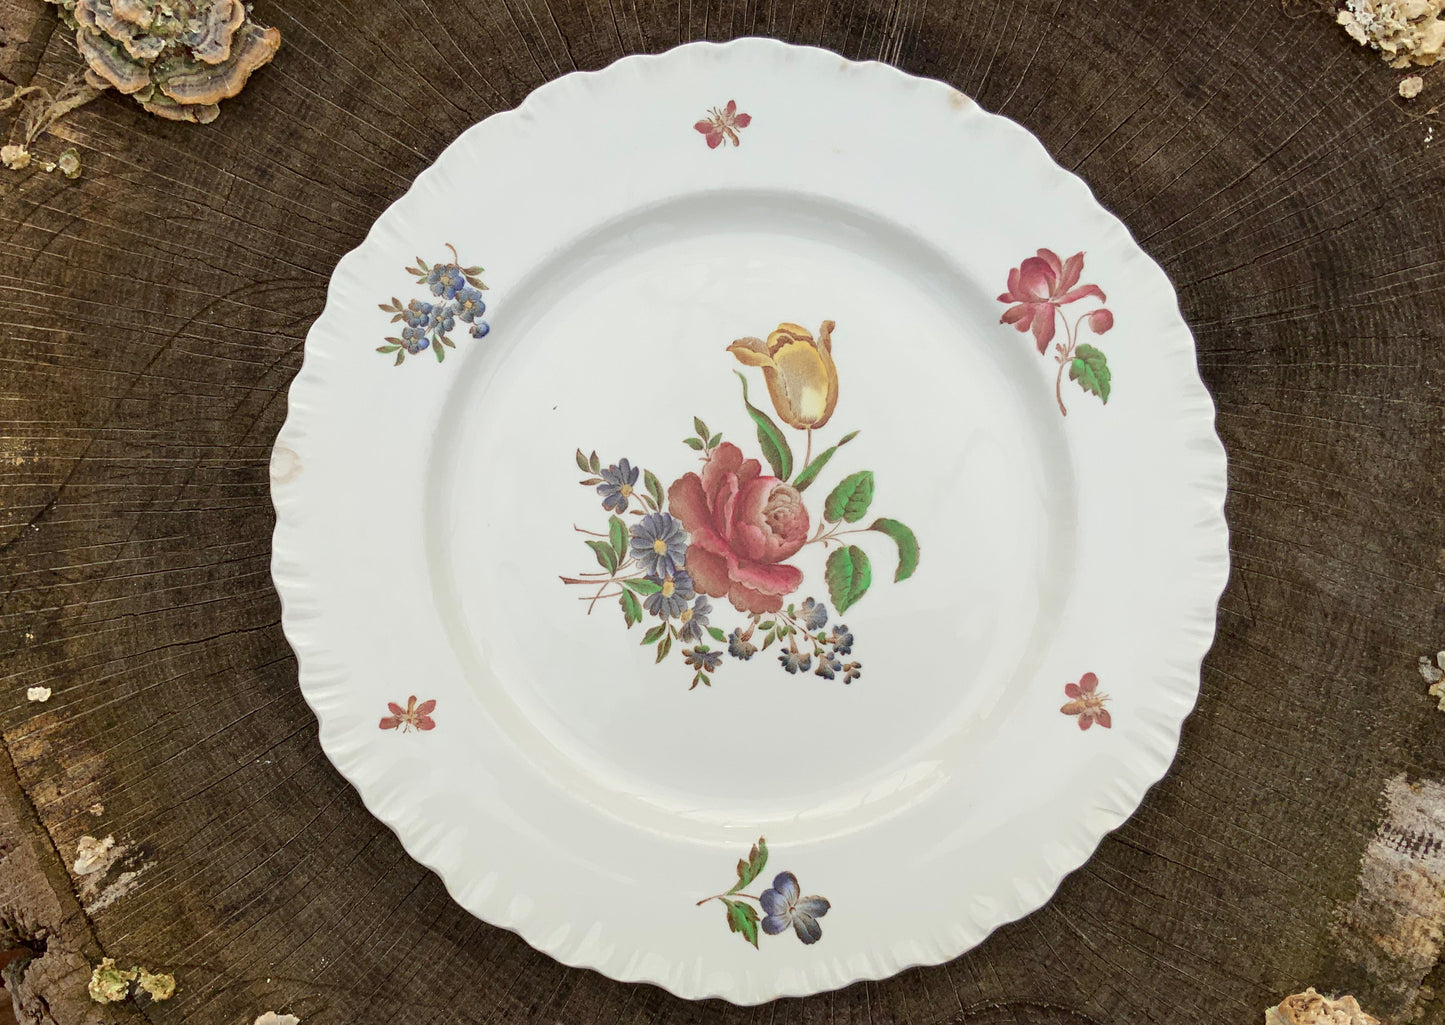 Vintage Barlaston Rose dinner plates from Wedgwood (sold as set of 6) #BarlastonRose #LoveWedgwood  #VintagePlates - DharBazaar